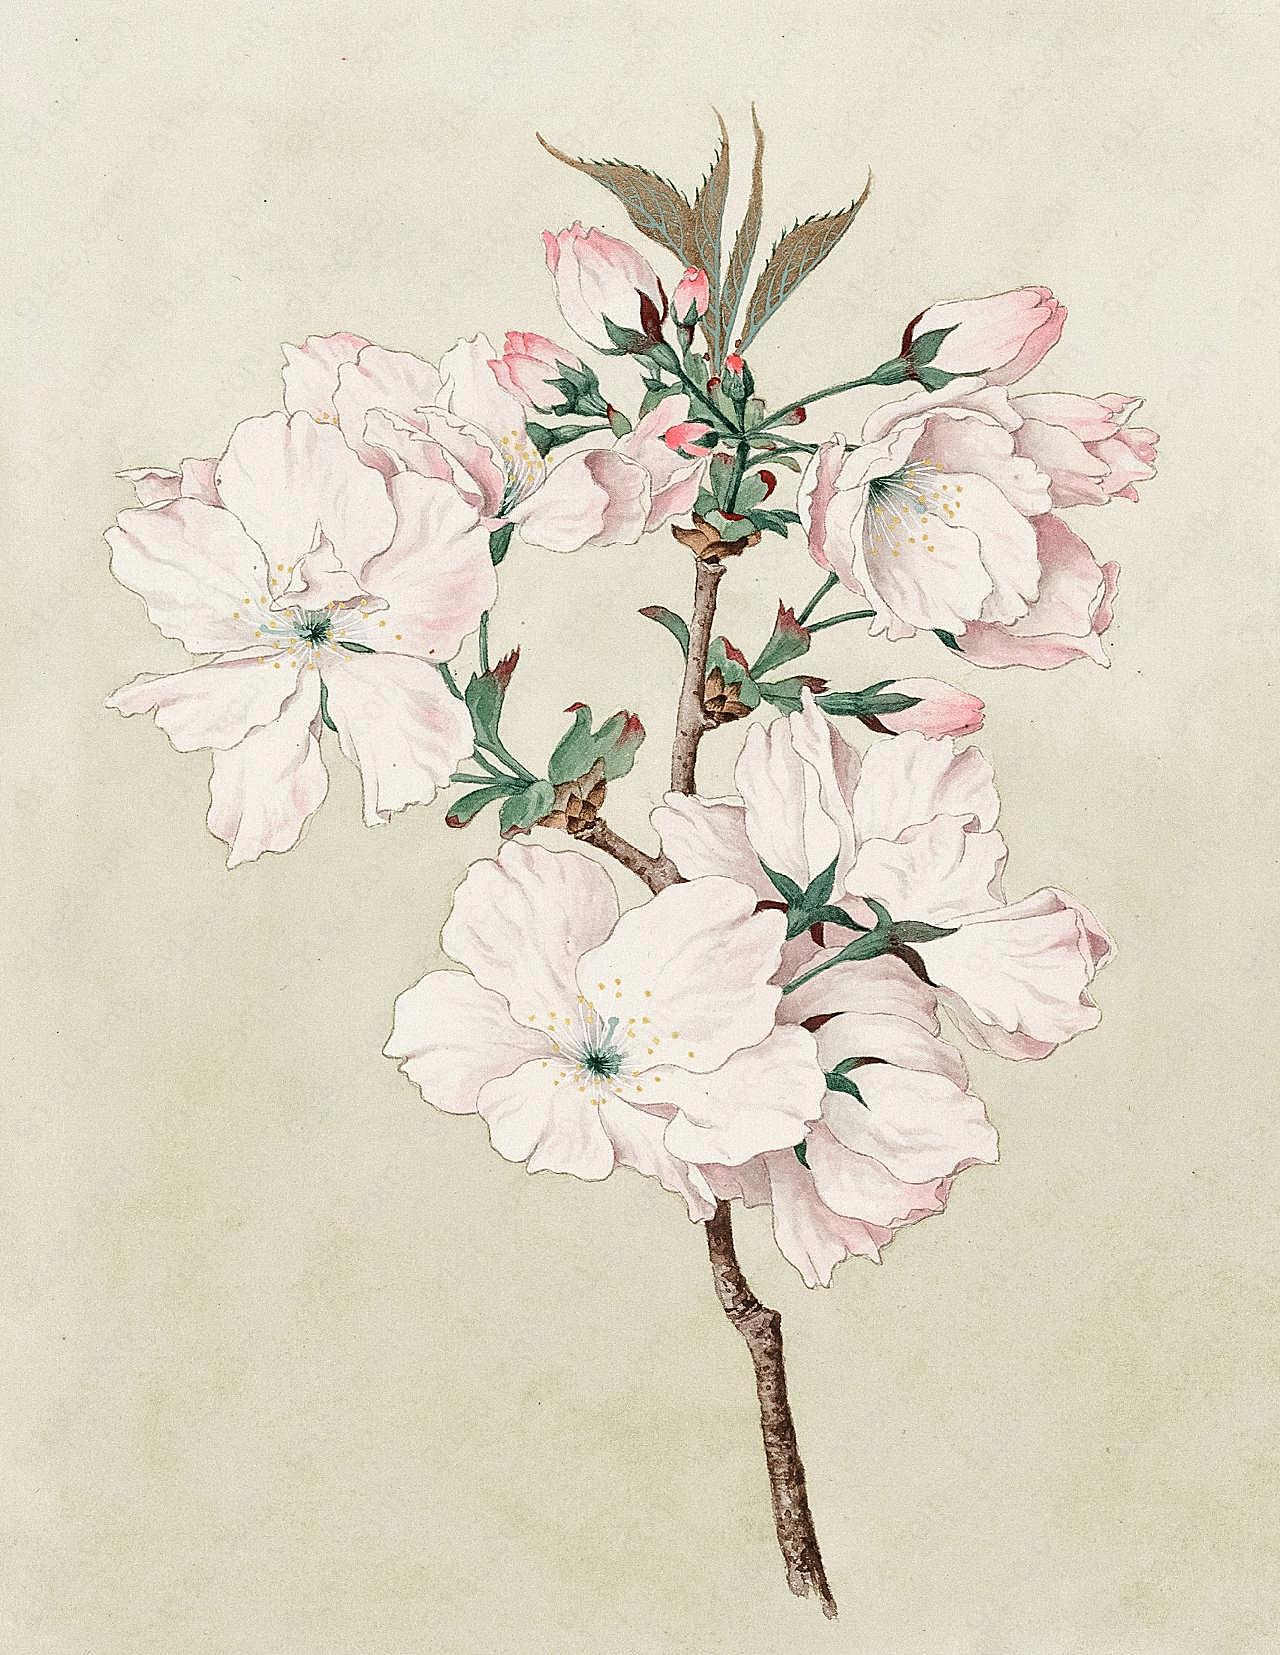 中国画鲜花花朵图片高清摄影